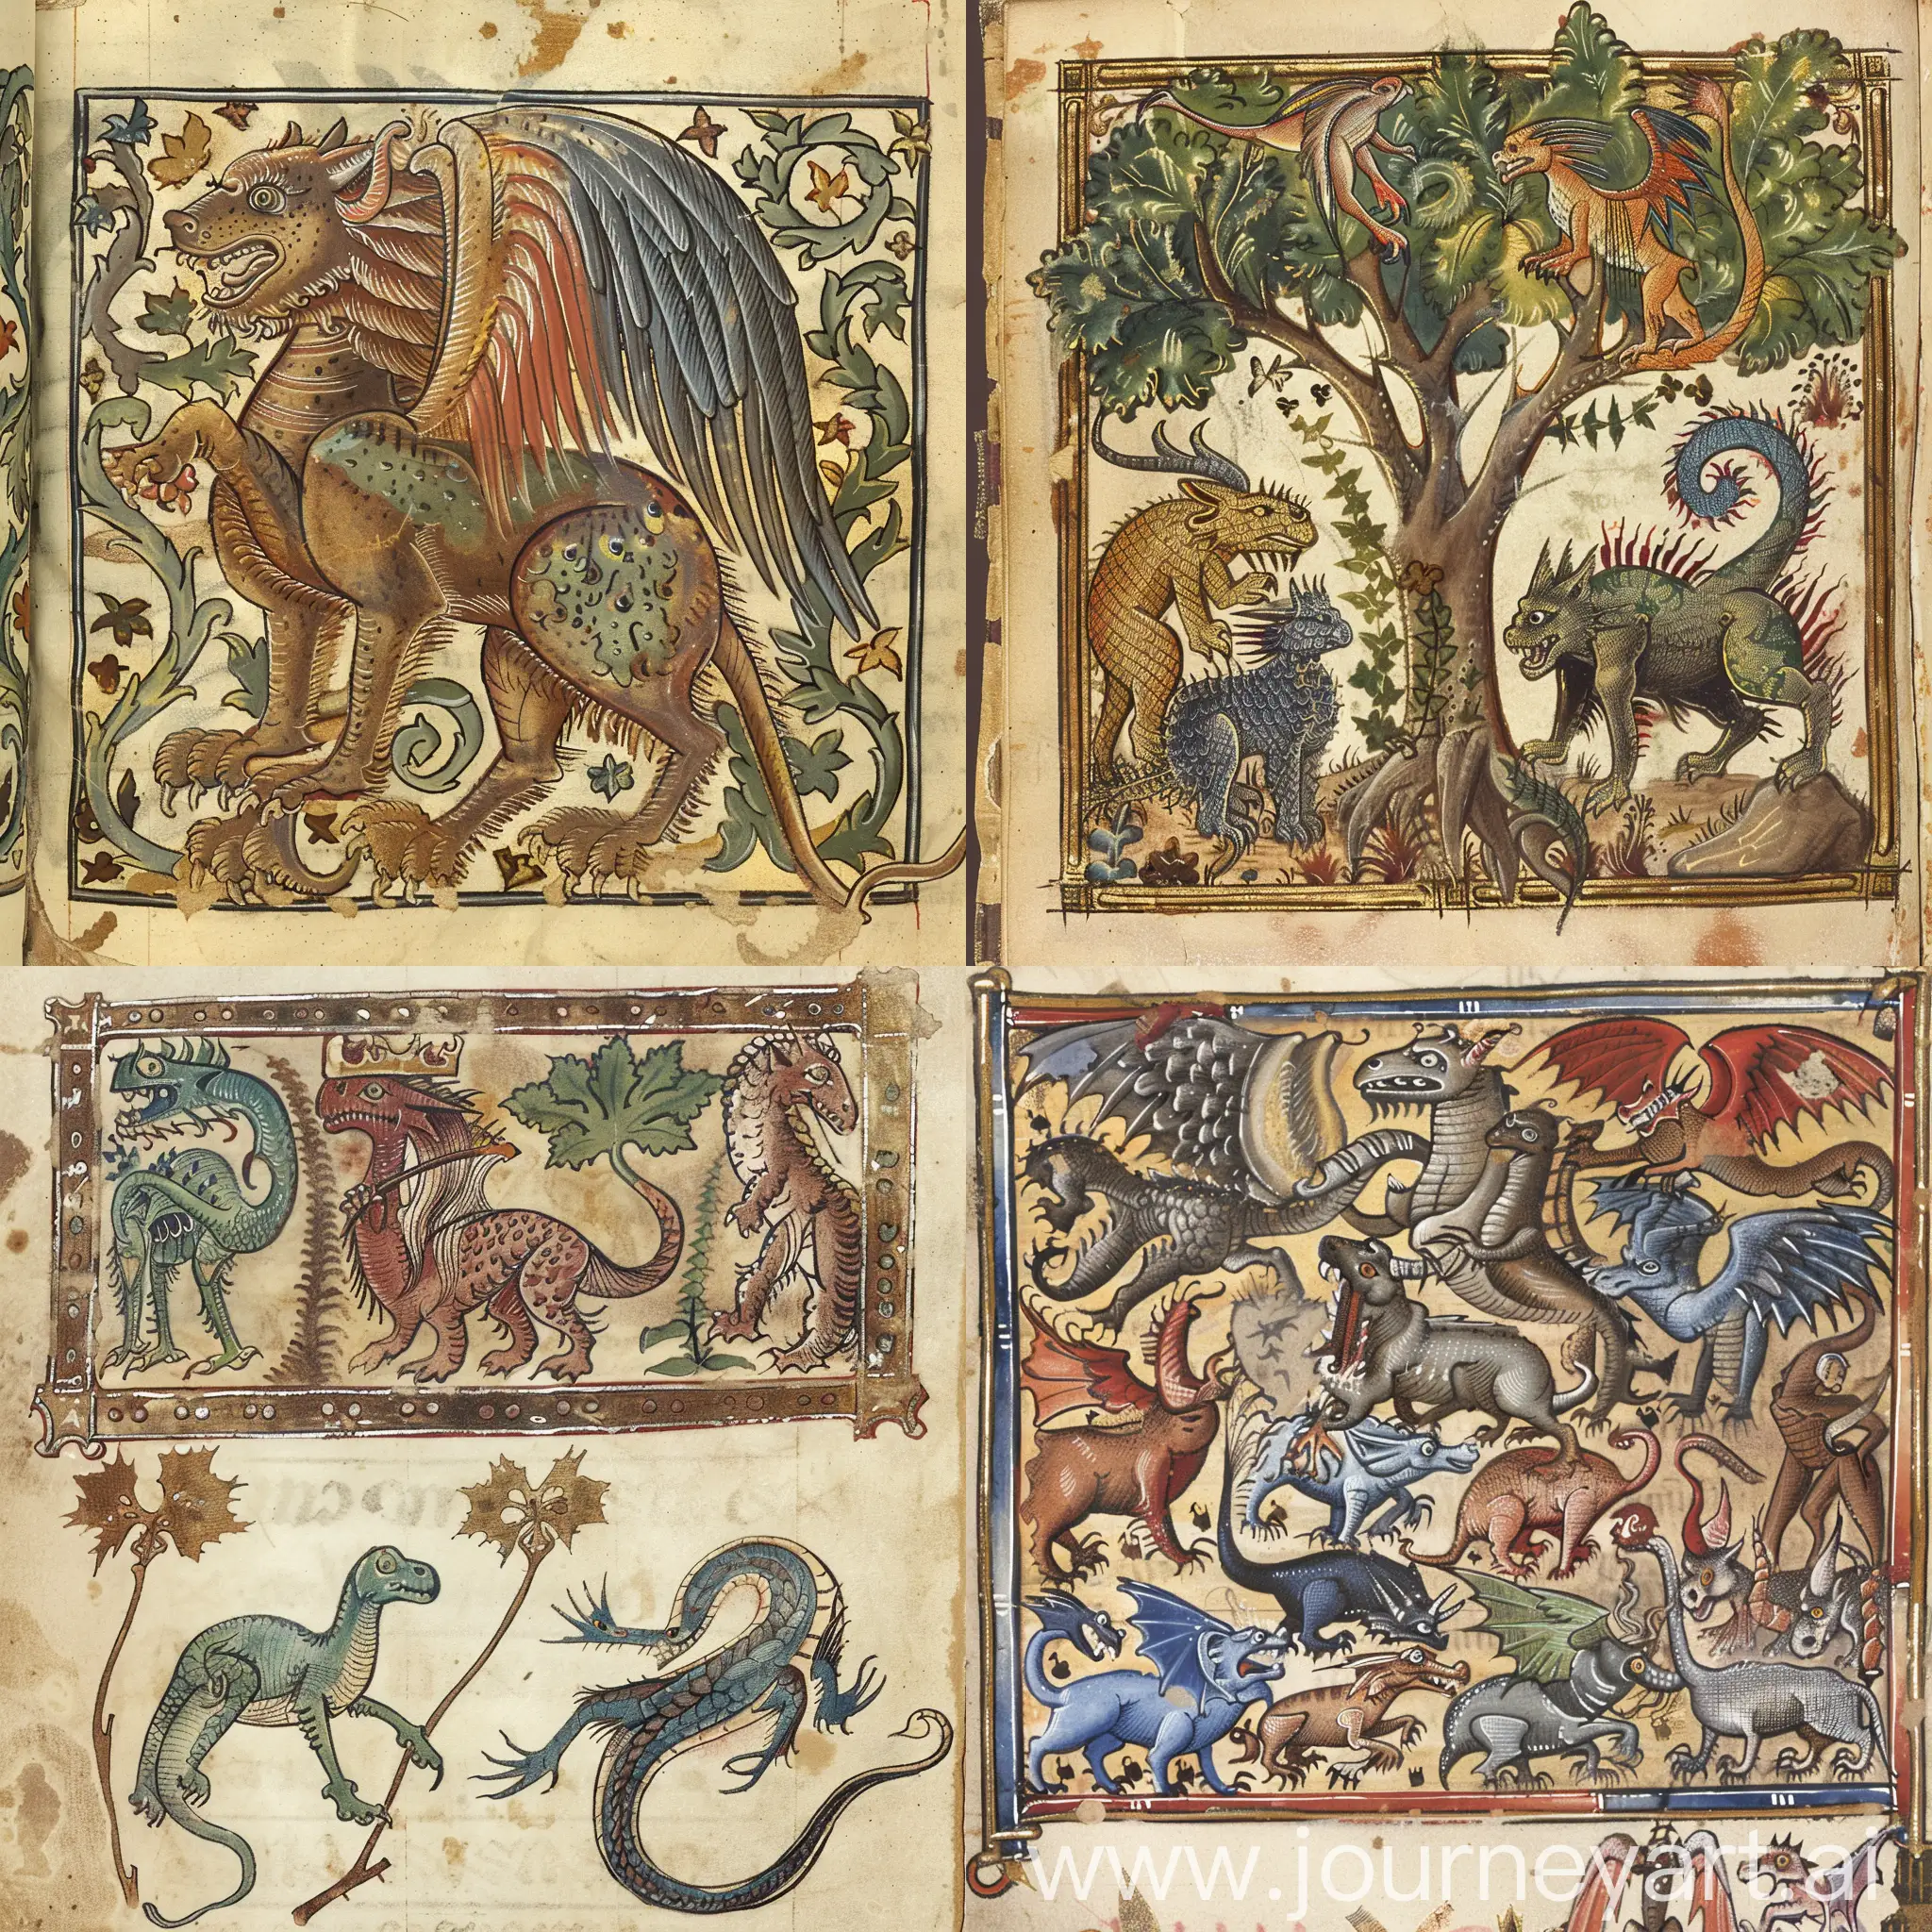 Iluminated medieval beastiary manuscript page